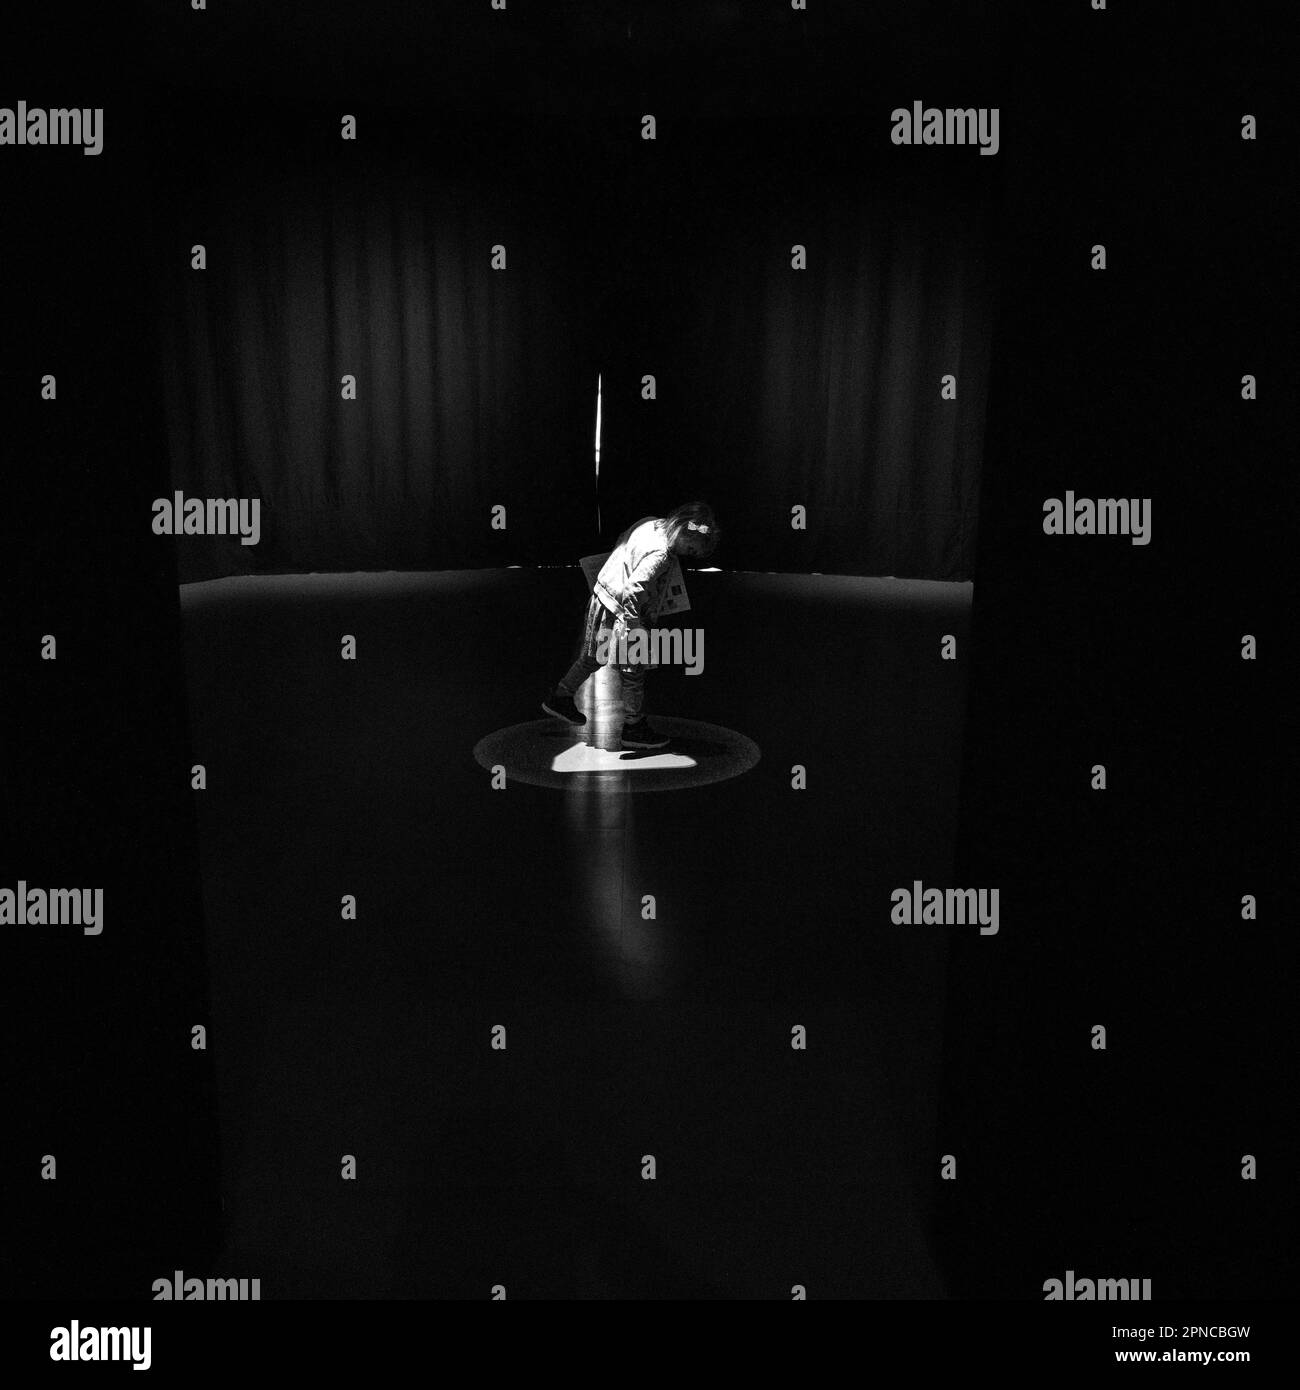 Immagine in scala di grigi di una persona in piedi in una stanza buia, illuminata da una singola sorgente luminosa. Foto Stock